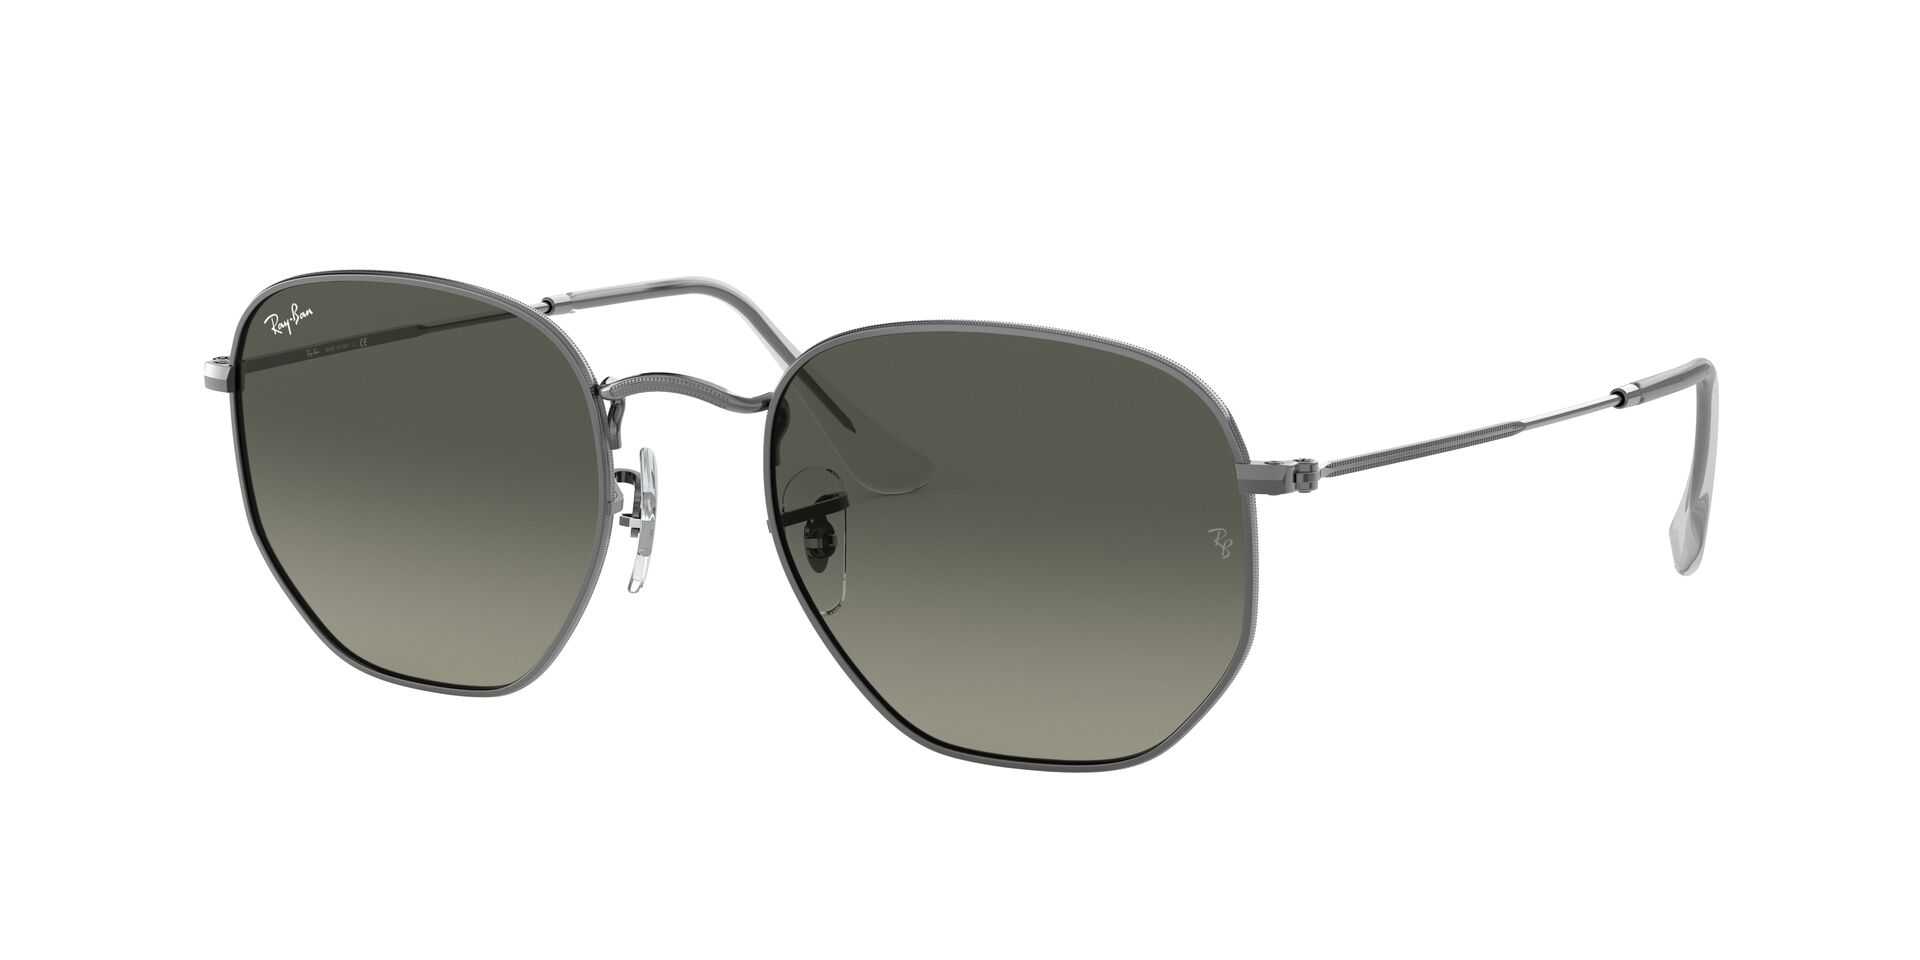 rayban sunglasses dubai, rb3548n, rayban glasses uae, cheap eyeglasses dubai, rayban dubai, gradient sunglasses